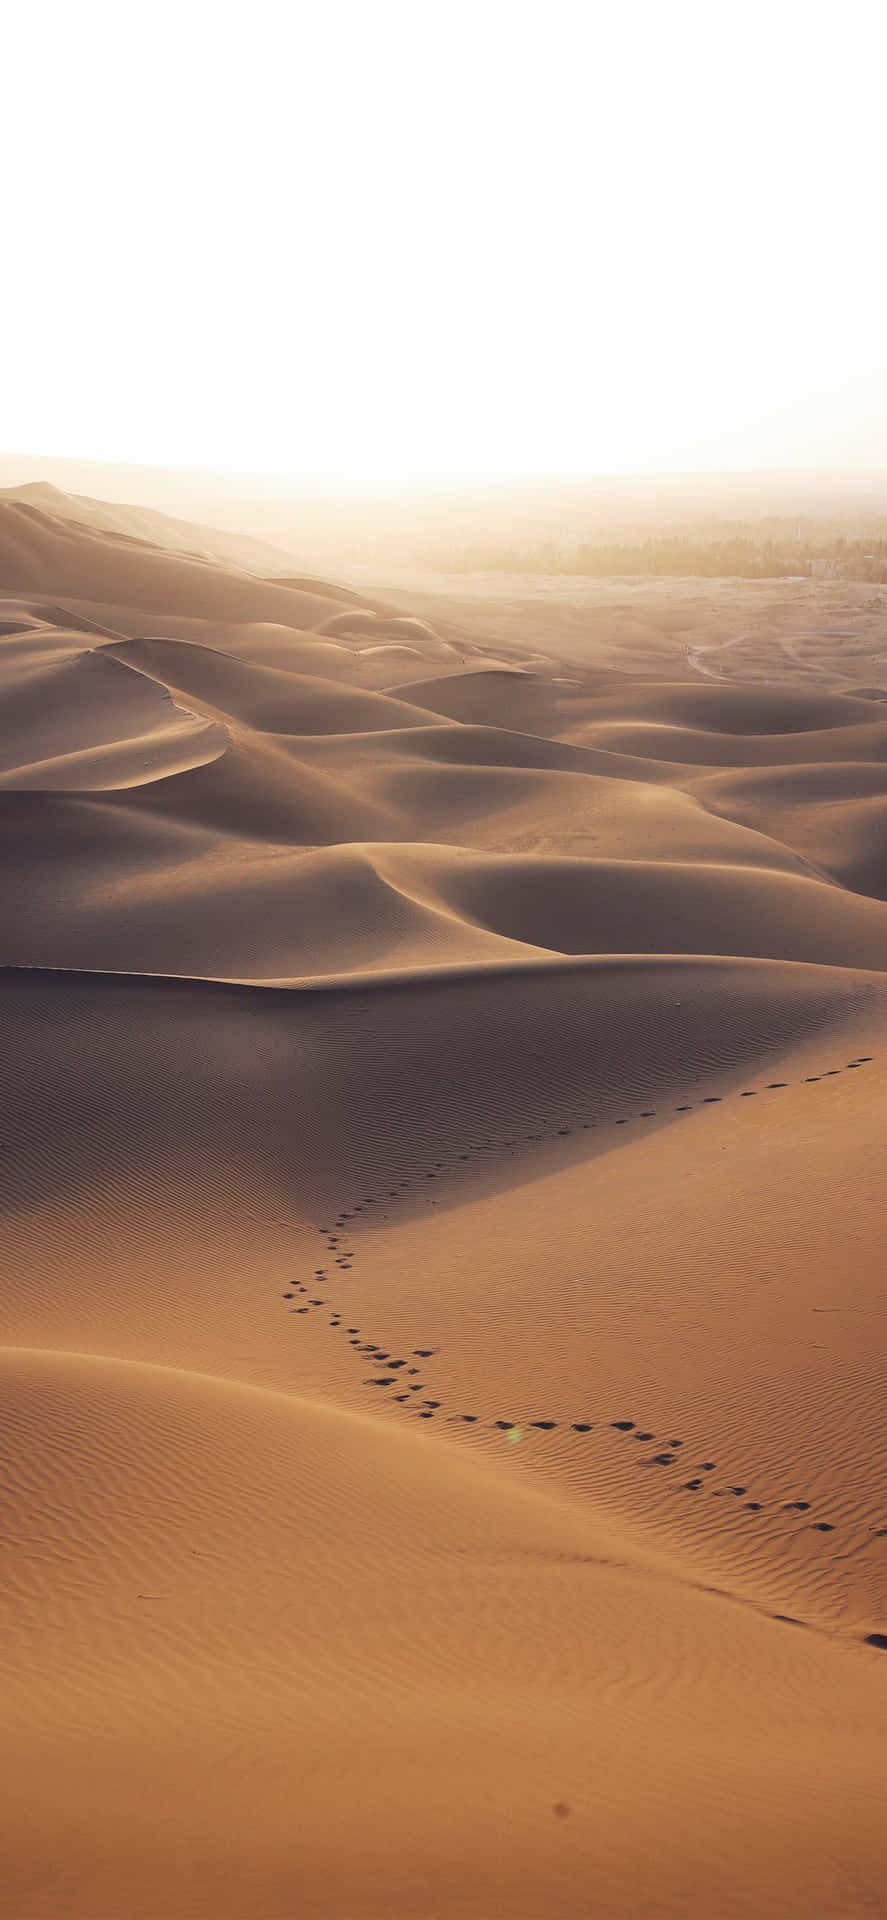 Improntesulla Sabbia Del Deserto Iphone. Sfondo